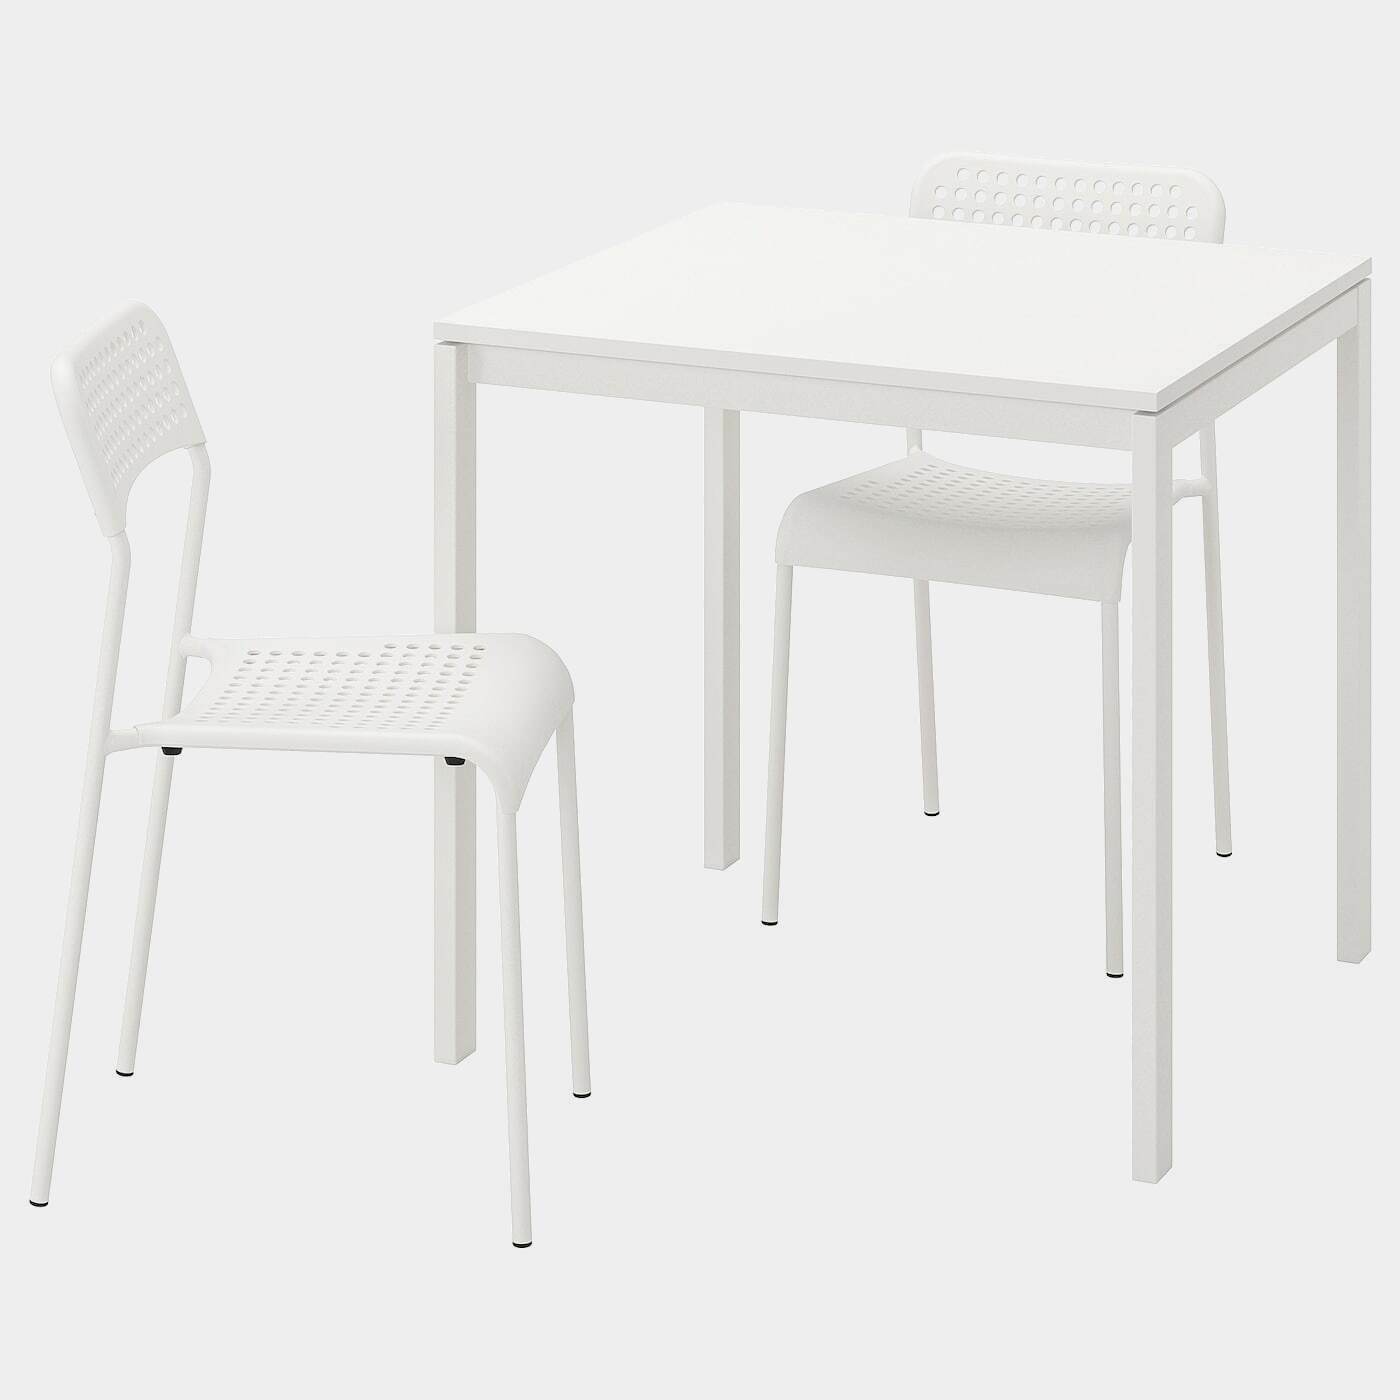 MELLTORP / ADDE Tisch und 2 Stühle  - Essplatzgruppe - Möbel Ideen für dein Zuhause von Home Trends. Möbel Trends von Social Media Influencer für dein Skandi Zuhause.